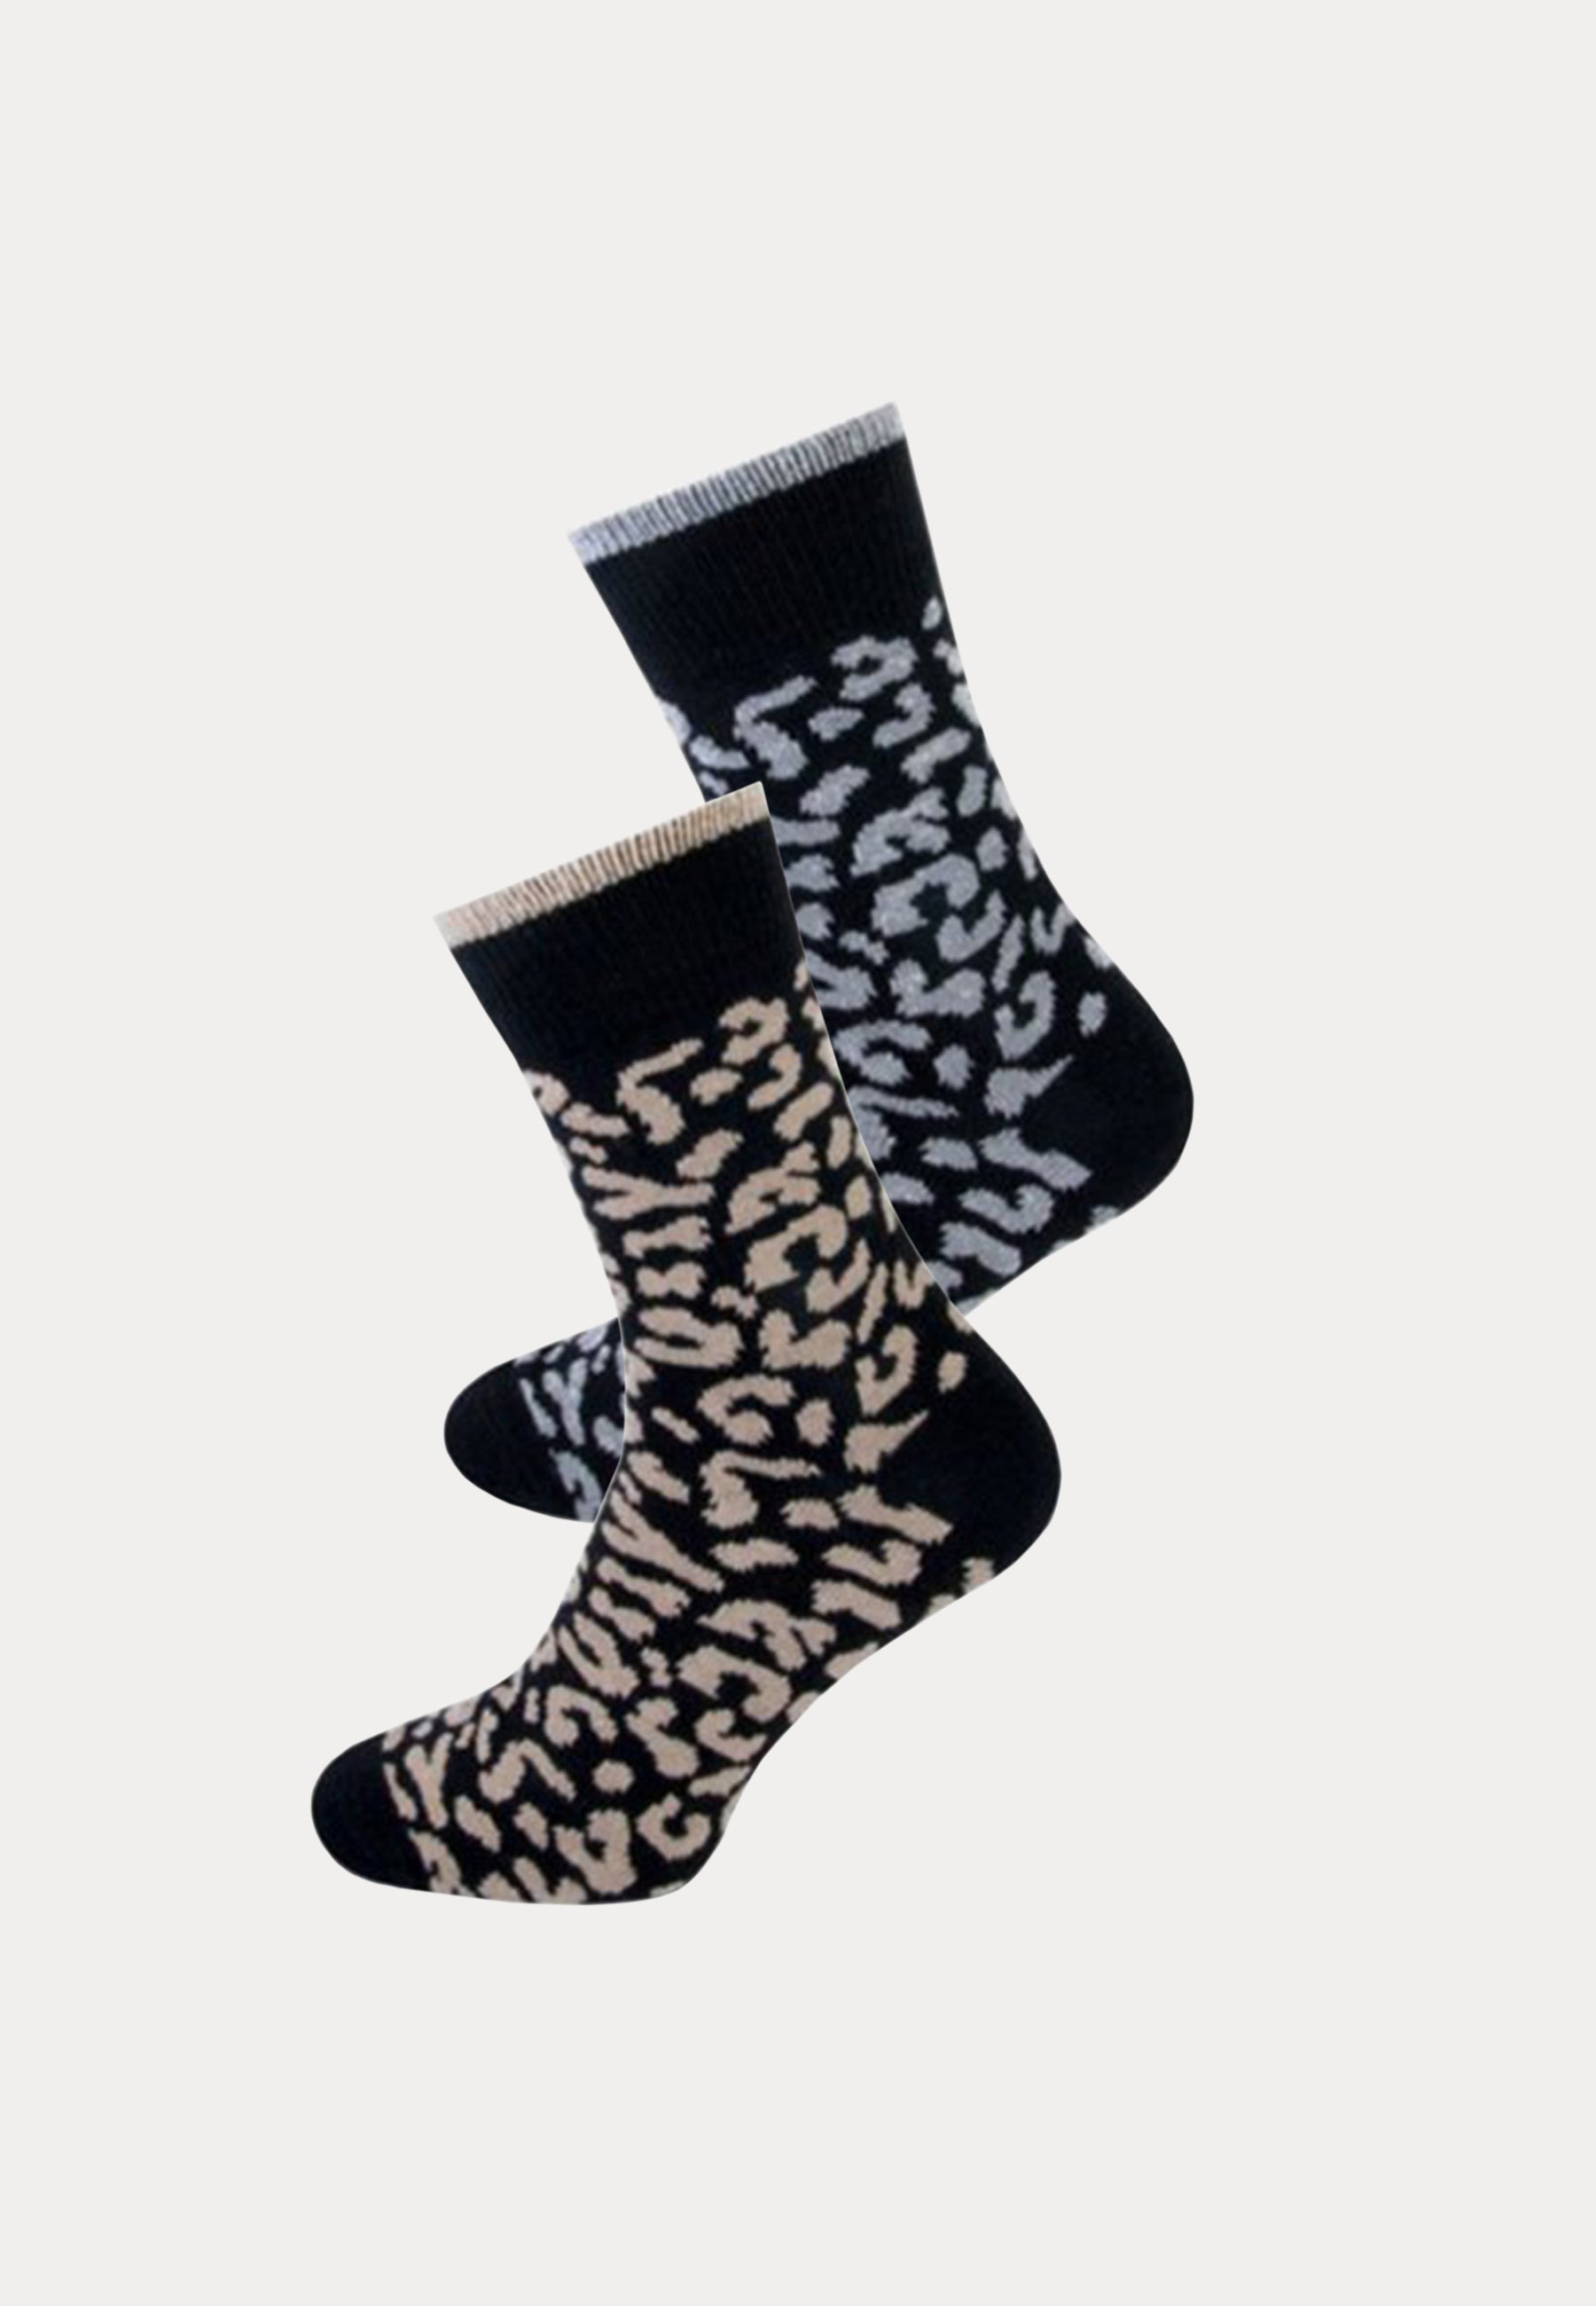 2 paar wolmix damessokken met leopard print van het merk Teckel